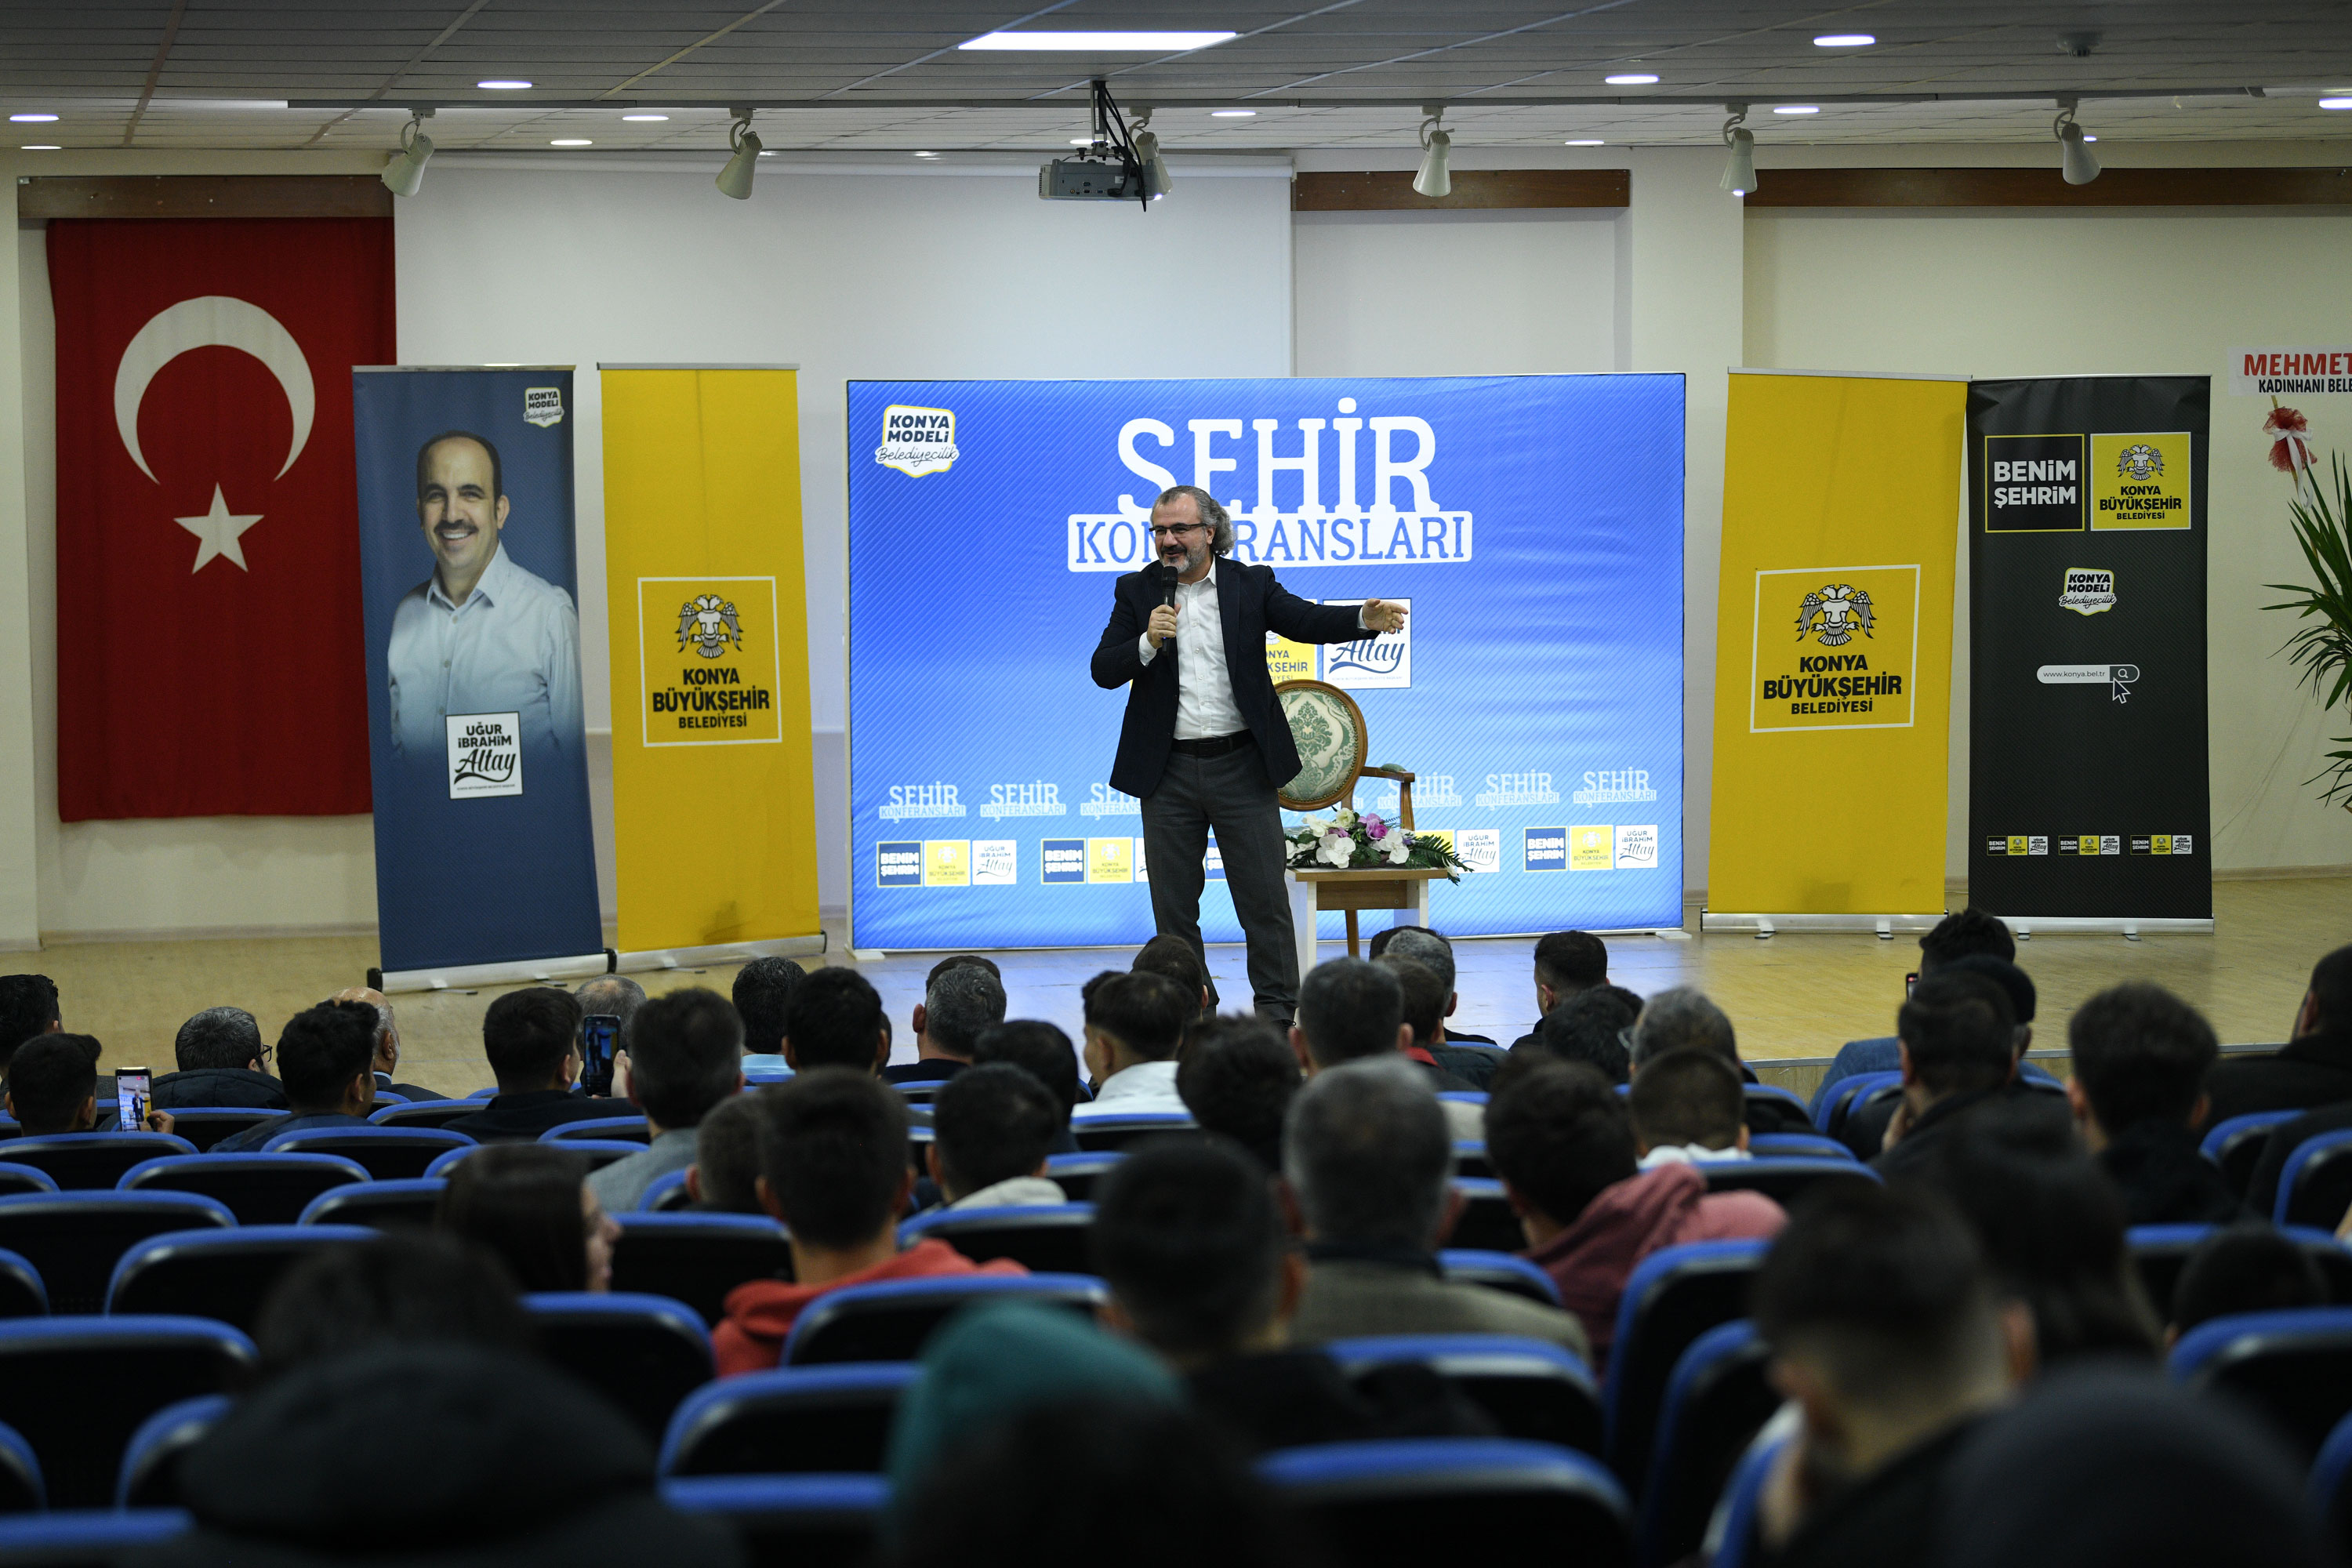 Konya Büyükşehir Belediyesi’nin Şehir Konferansları İlçelerde Sürüyor